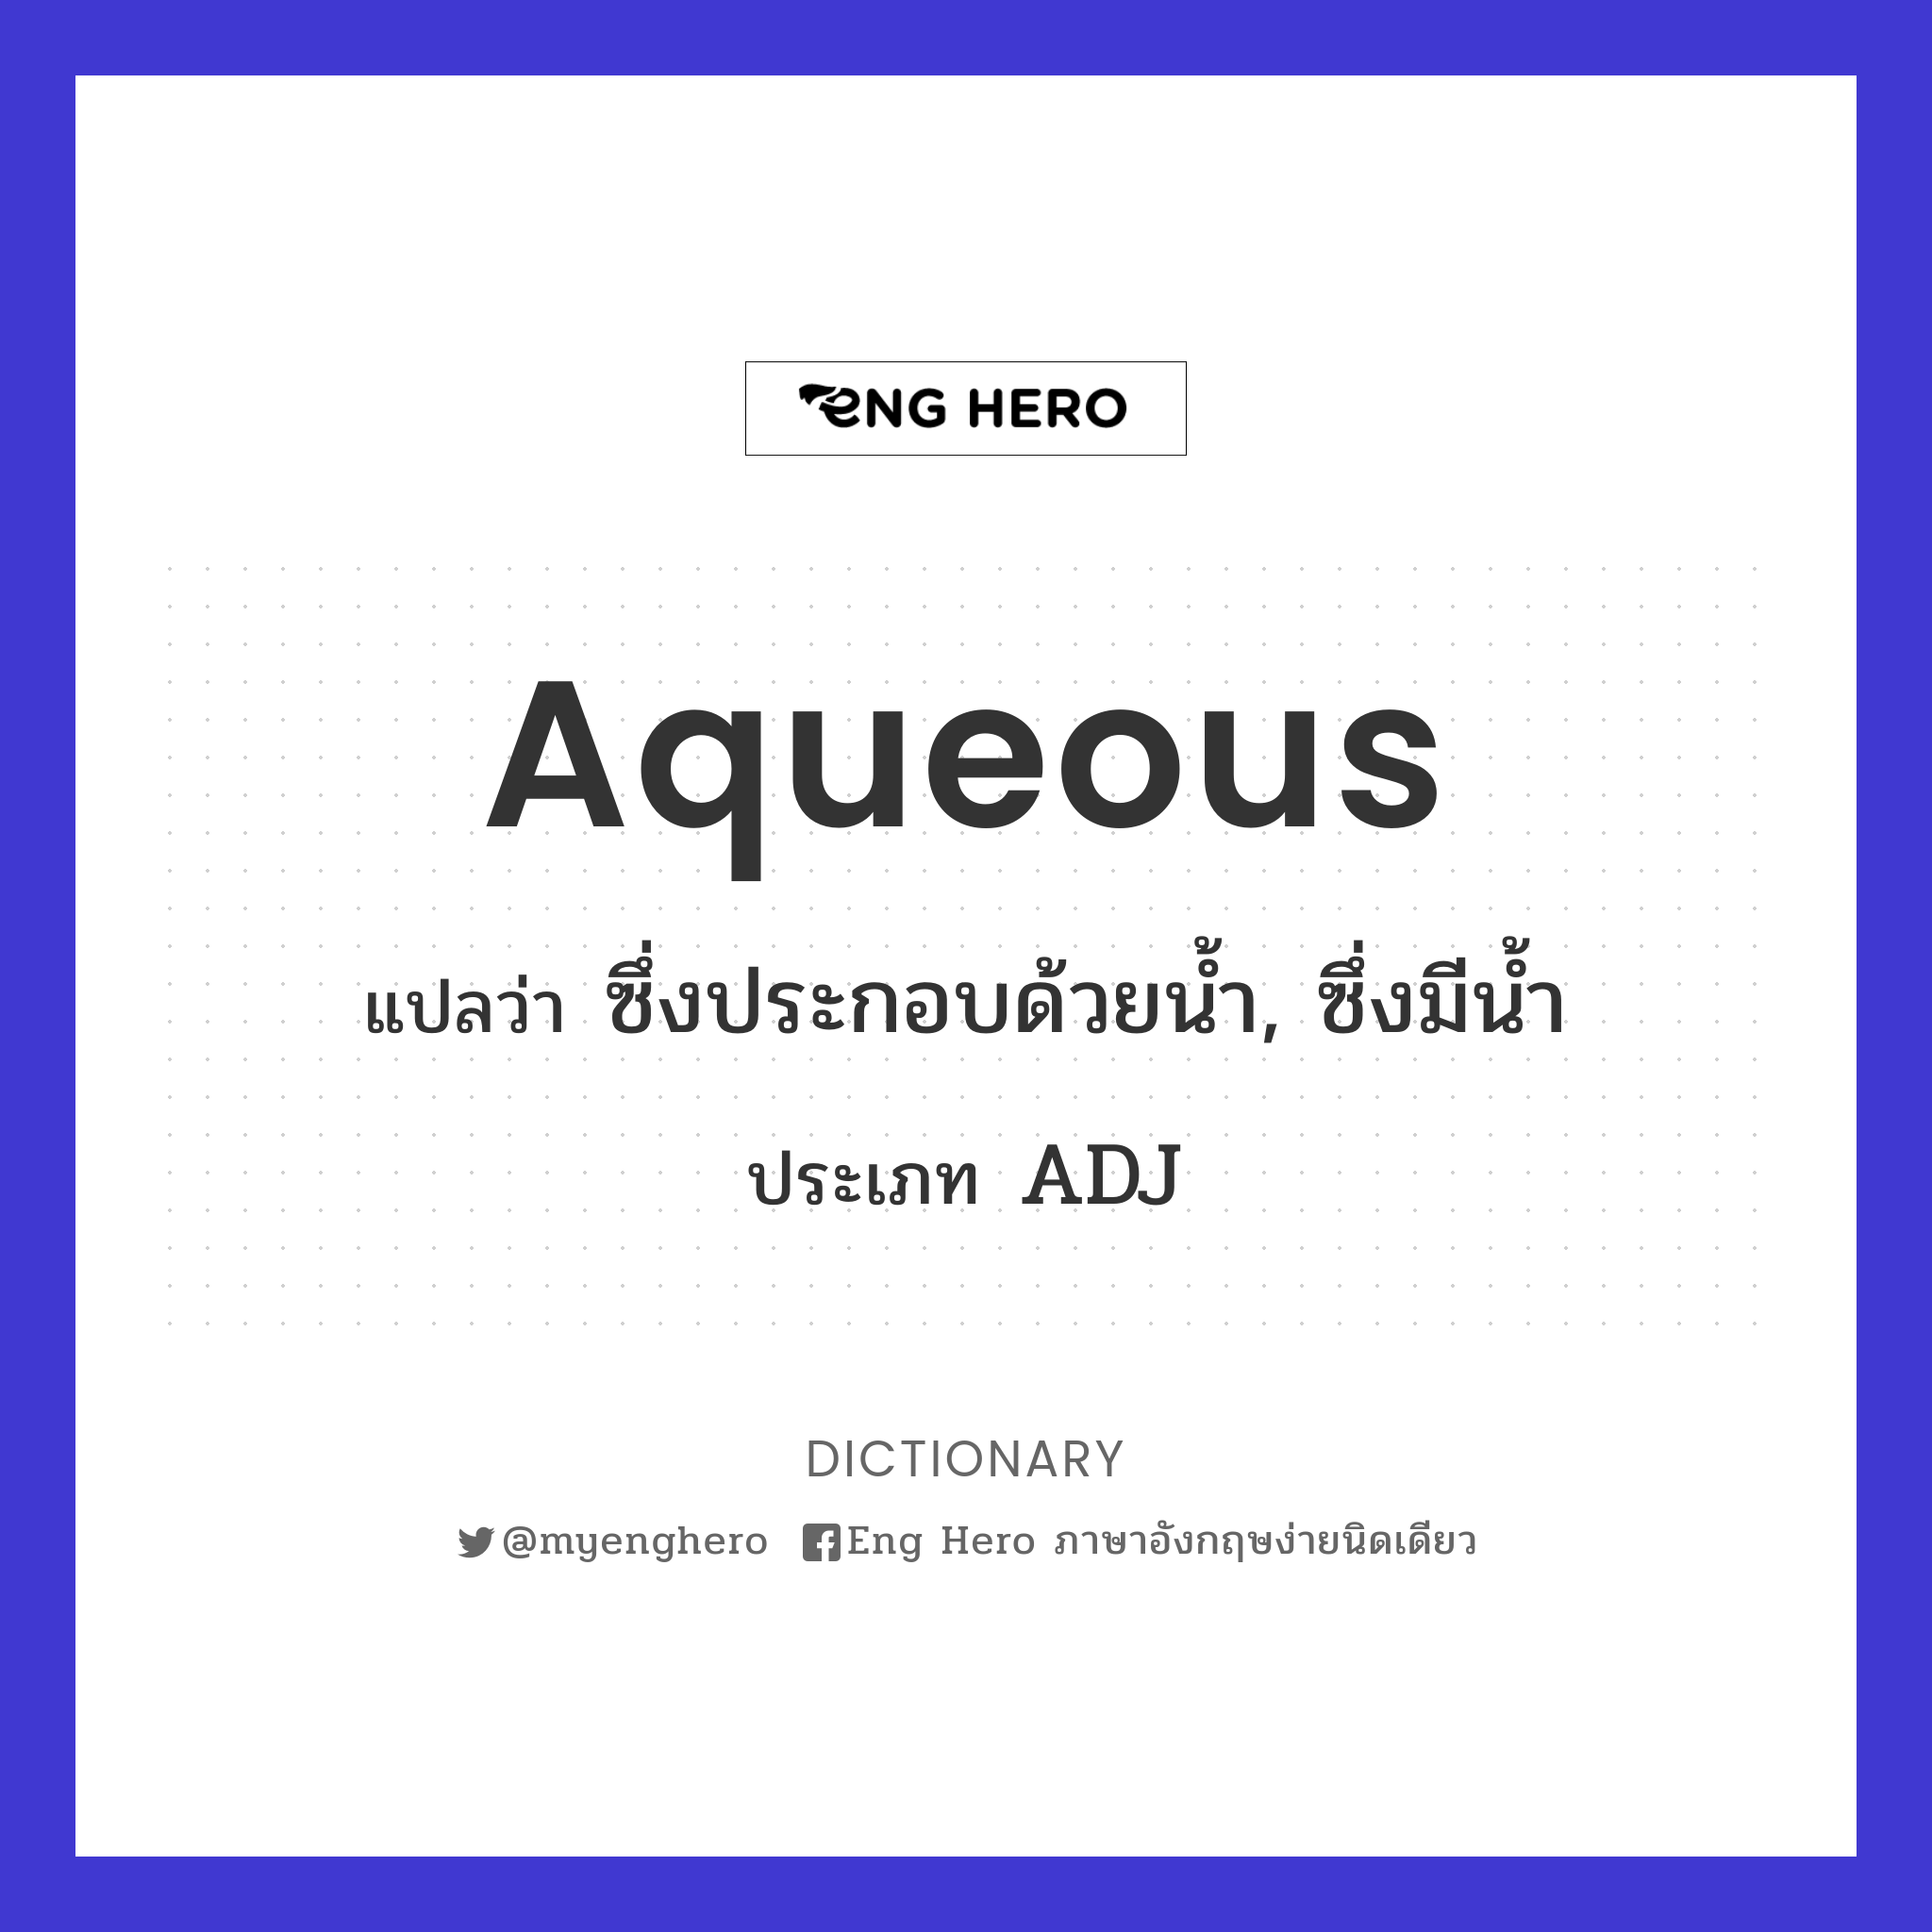 aqueous